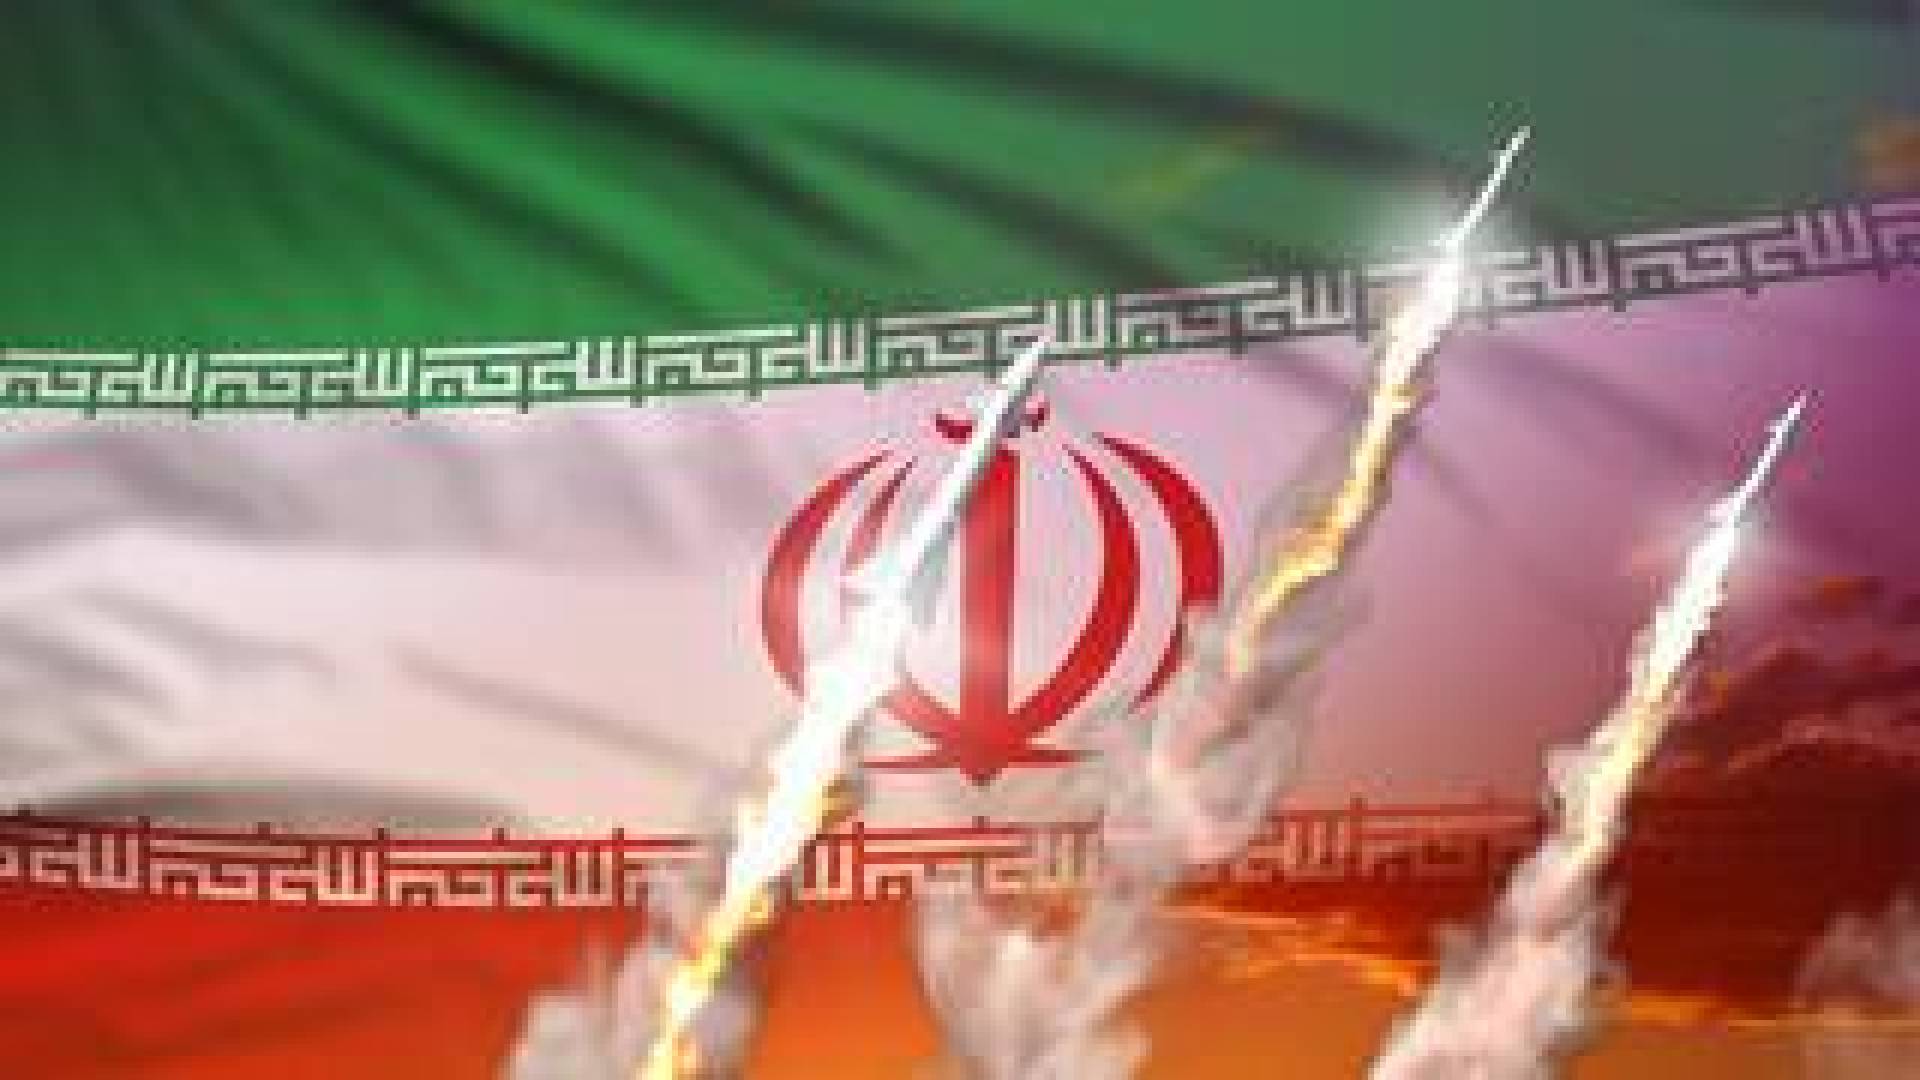 إيران تهدد : إذا قام أحد منكم بمد رجله خارج بساطه سوف نقطعها